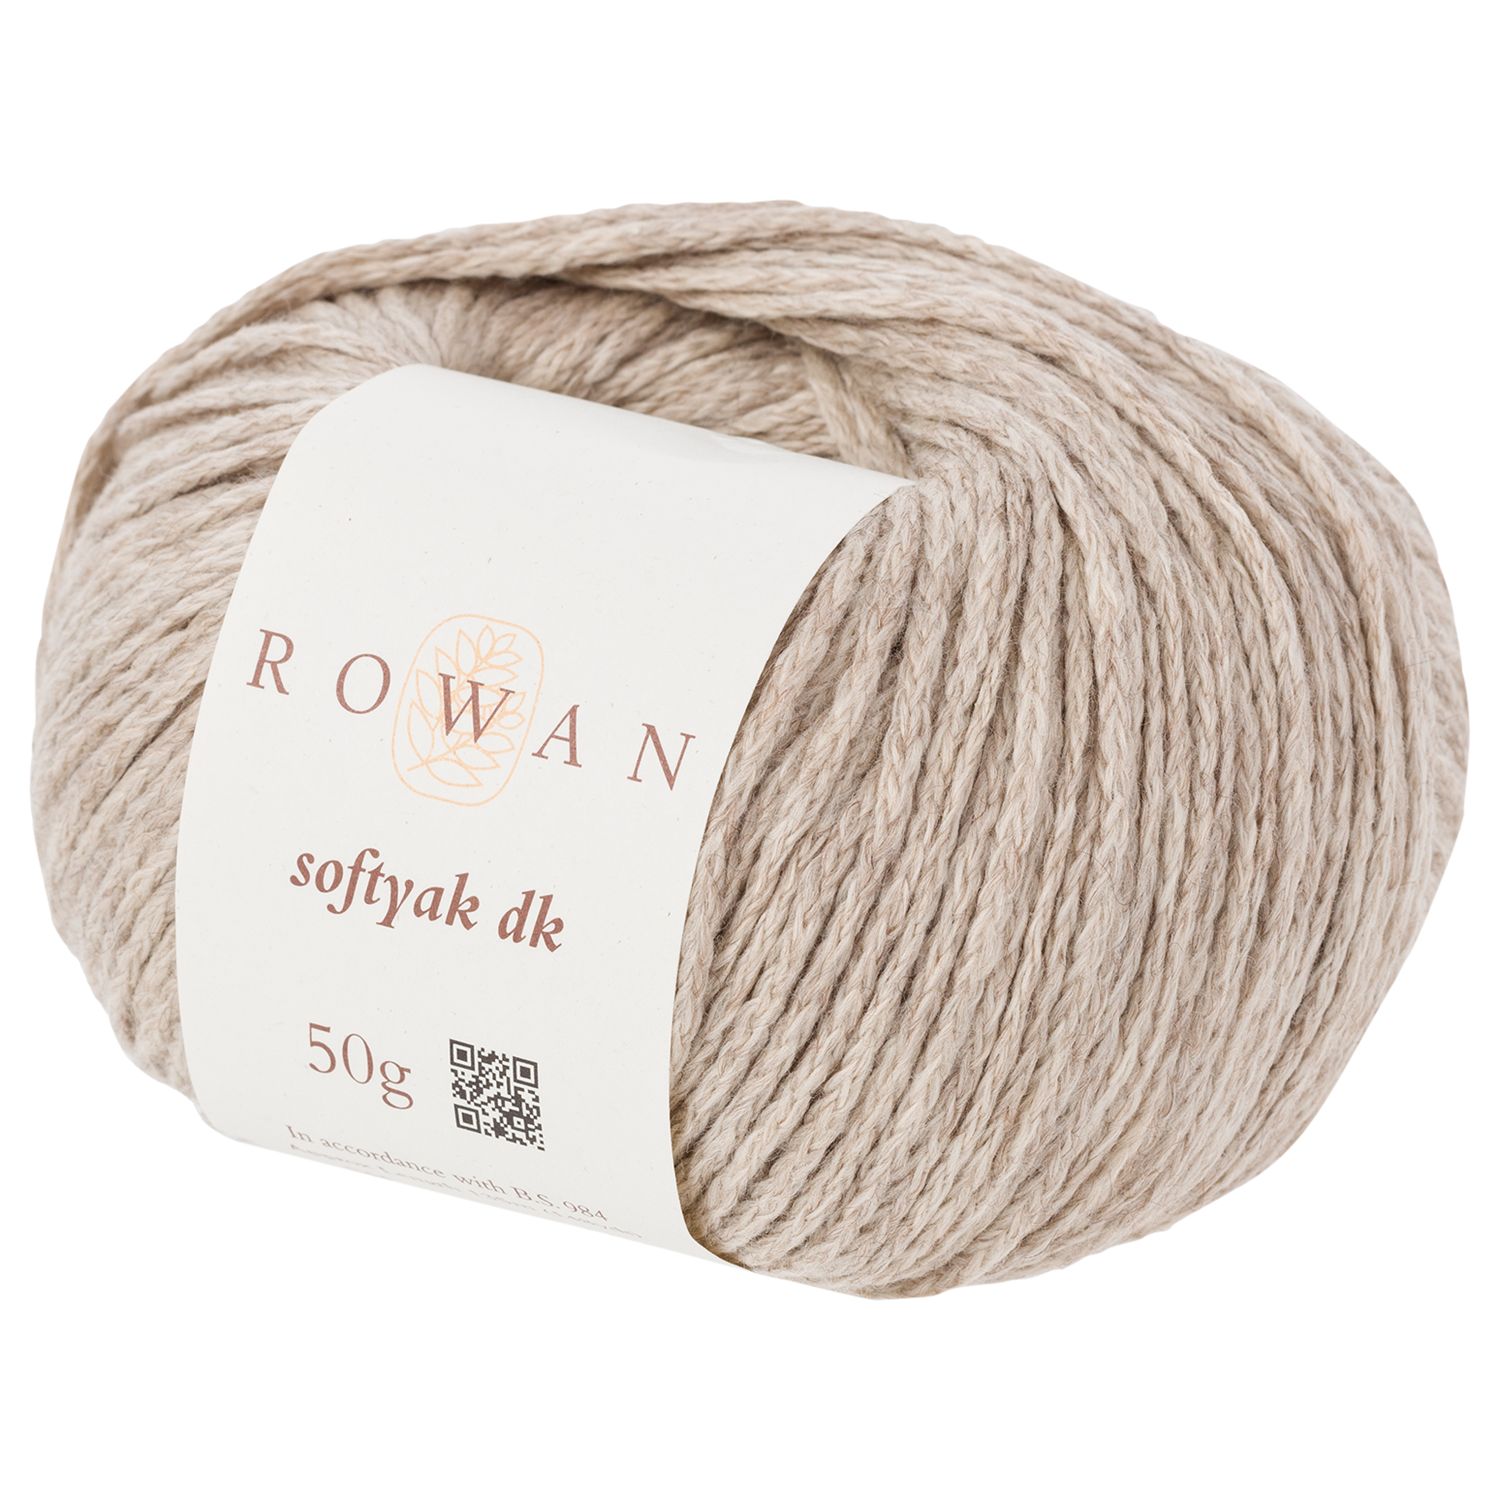 Rowan Softyak DK Yarn, 50g